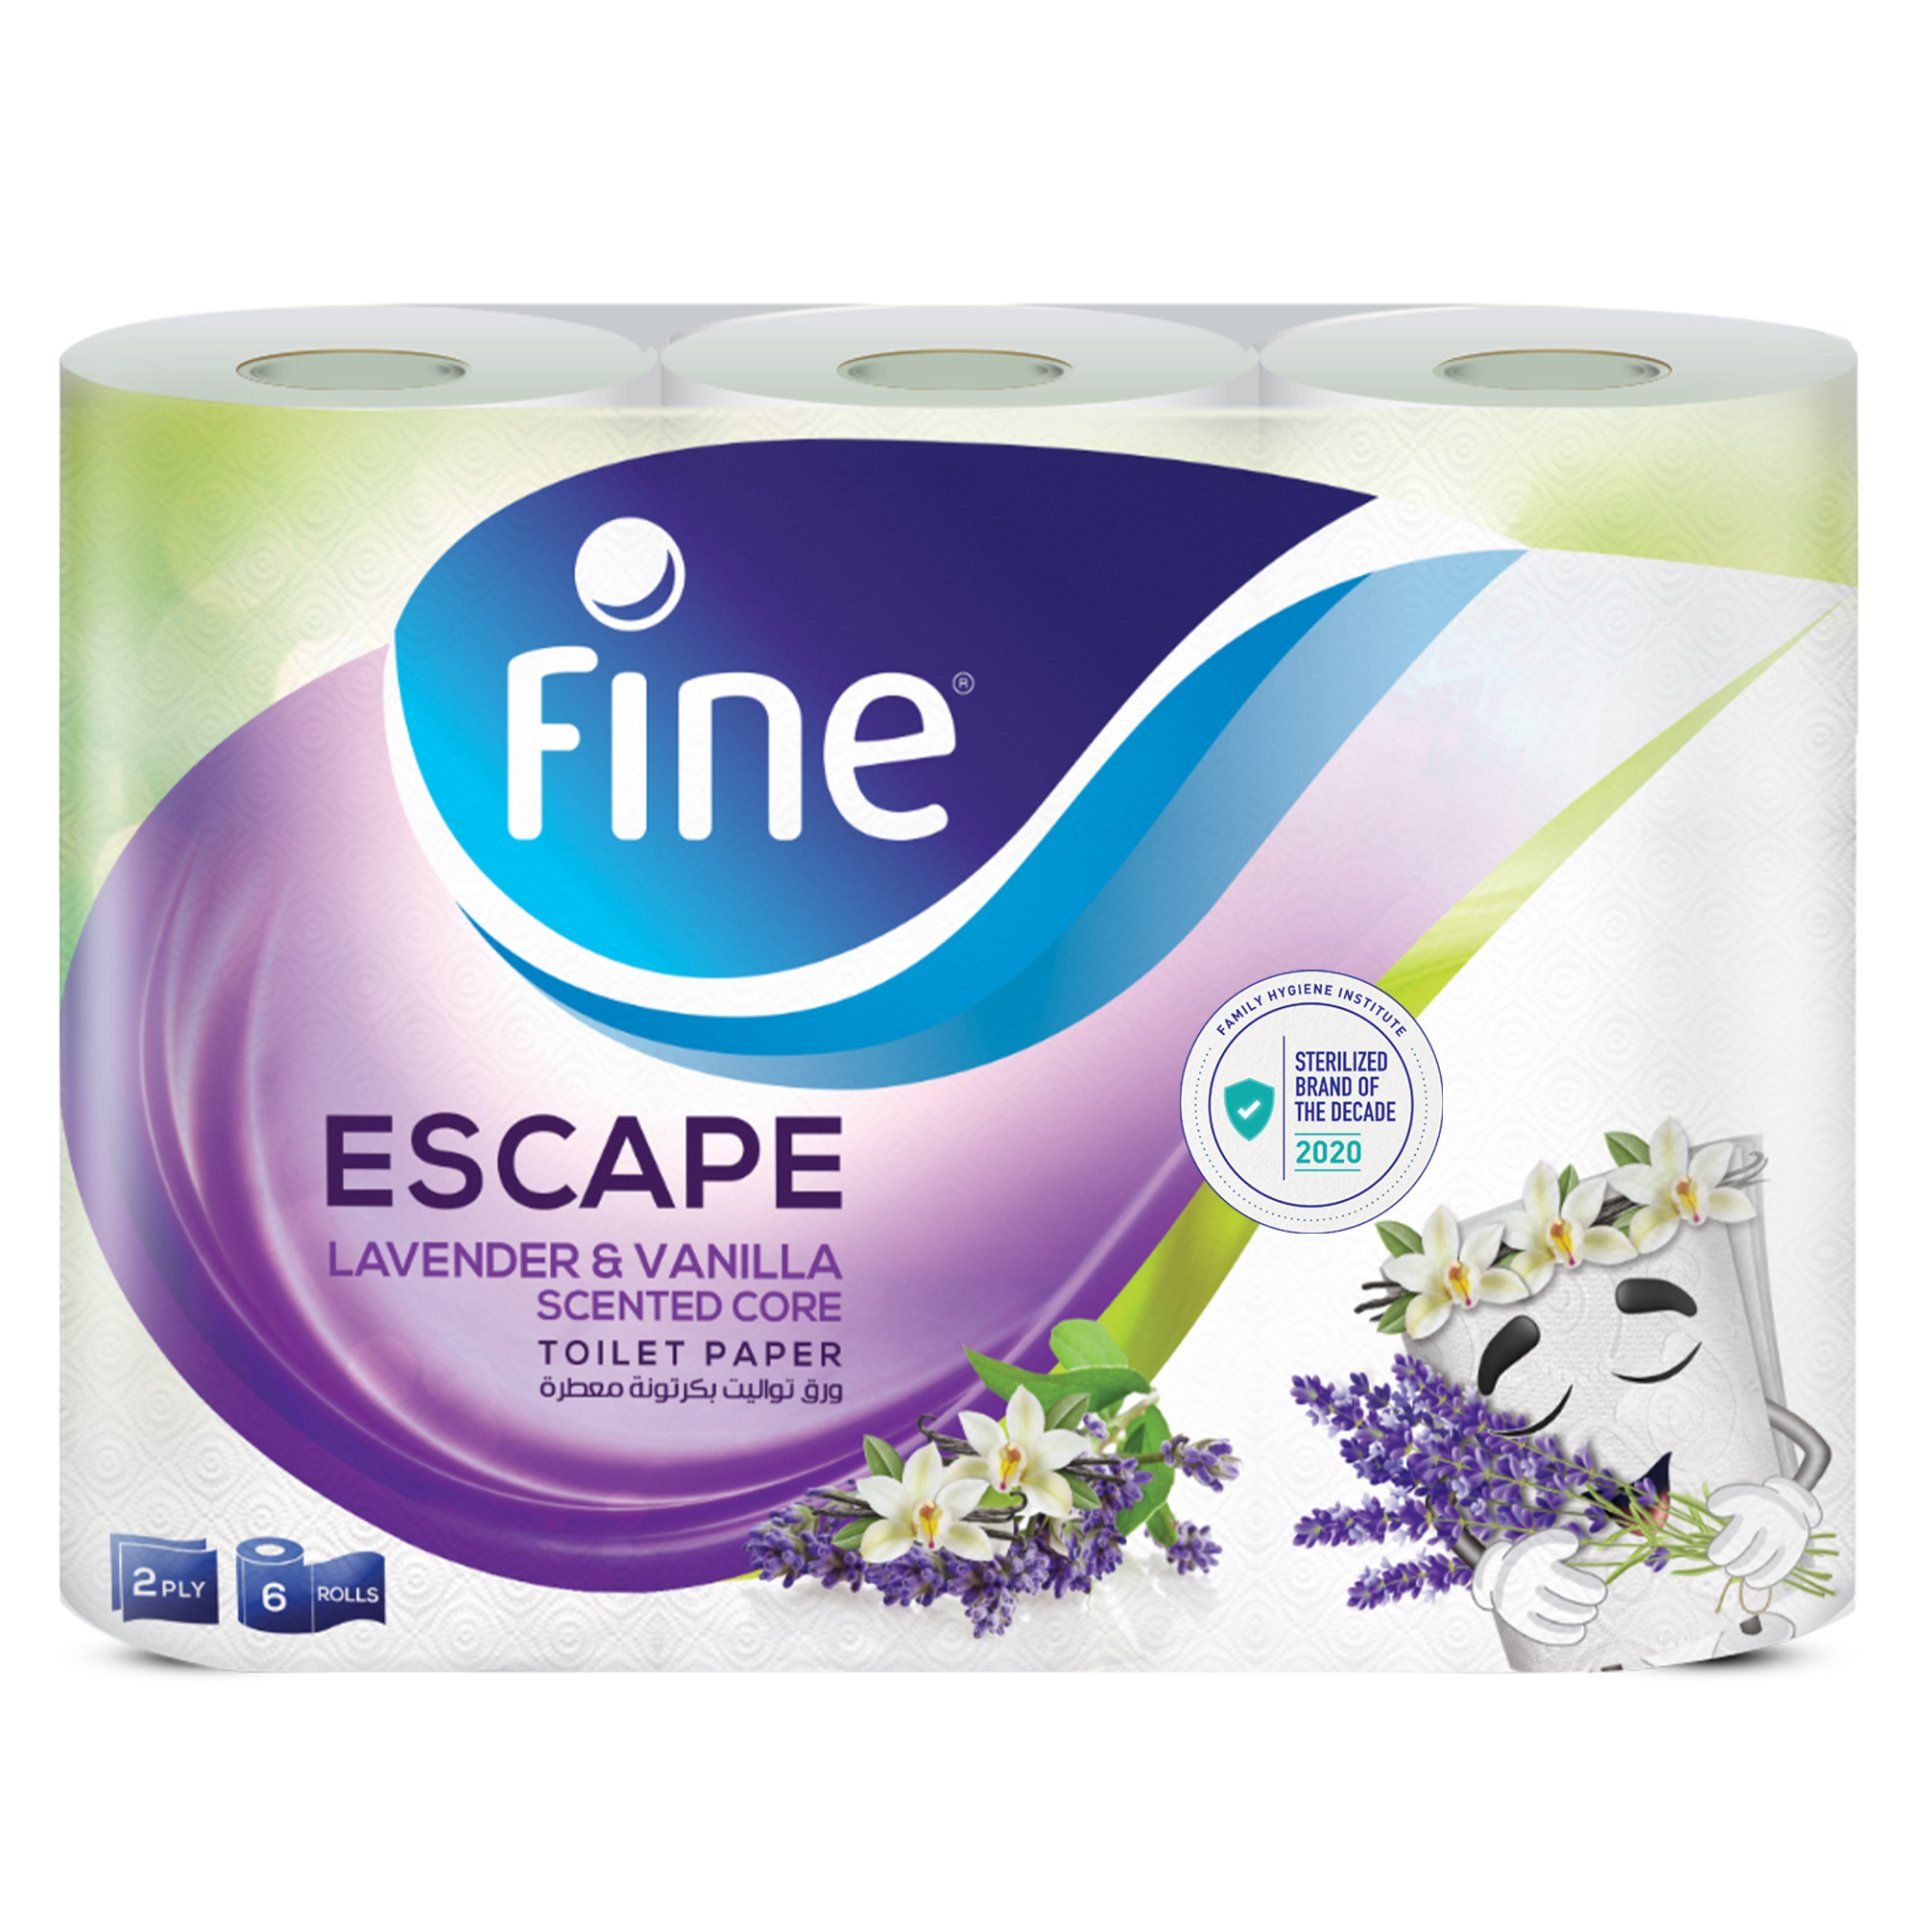 Fine Escape Lavender & Vanilla Toilet Roll Image